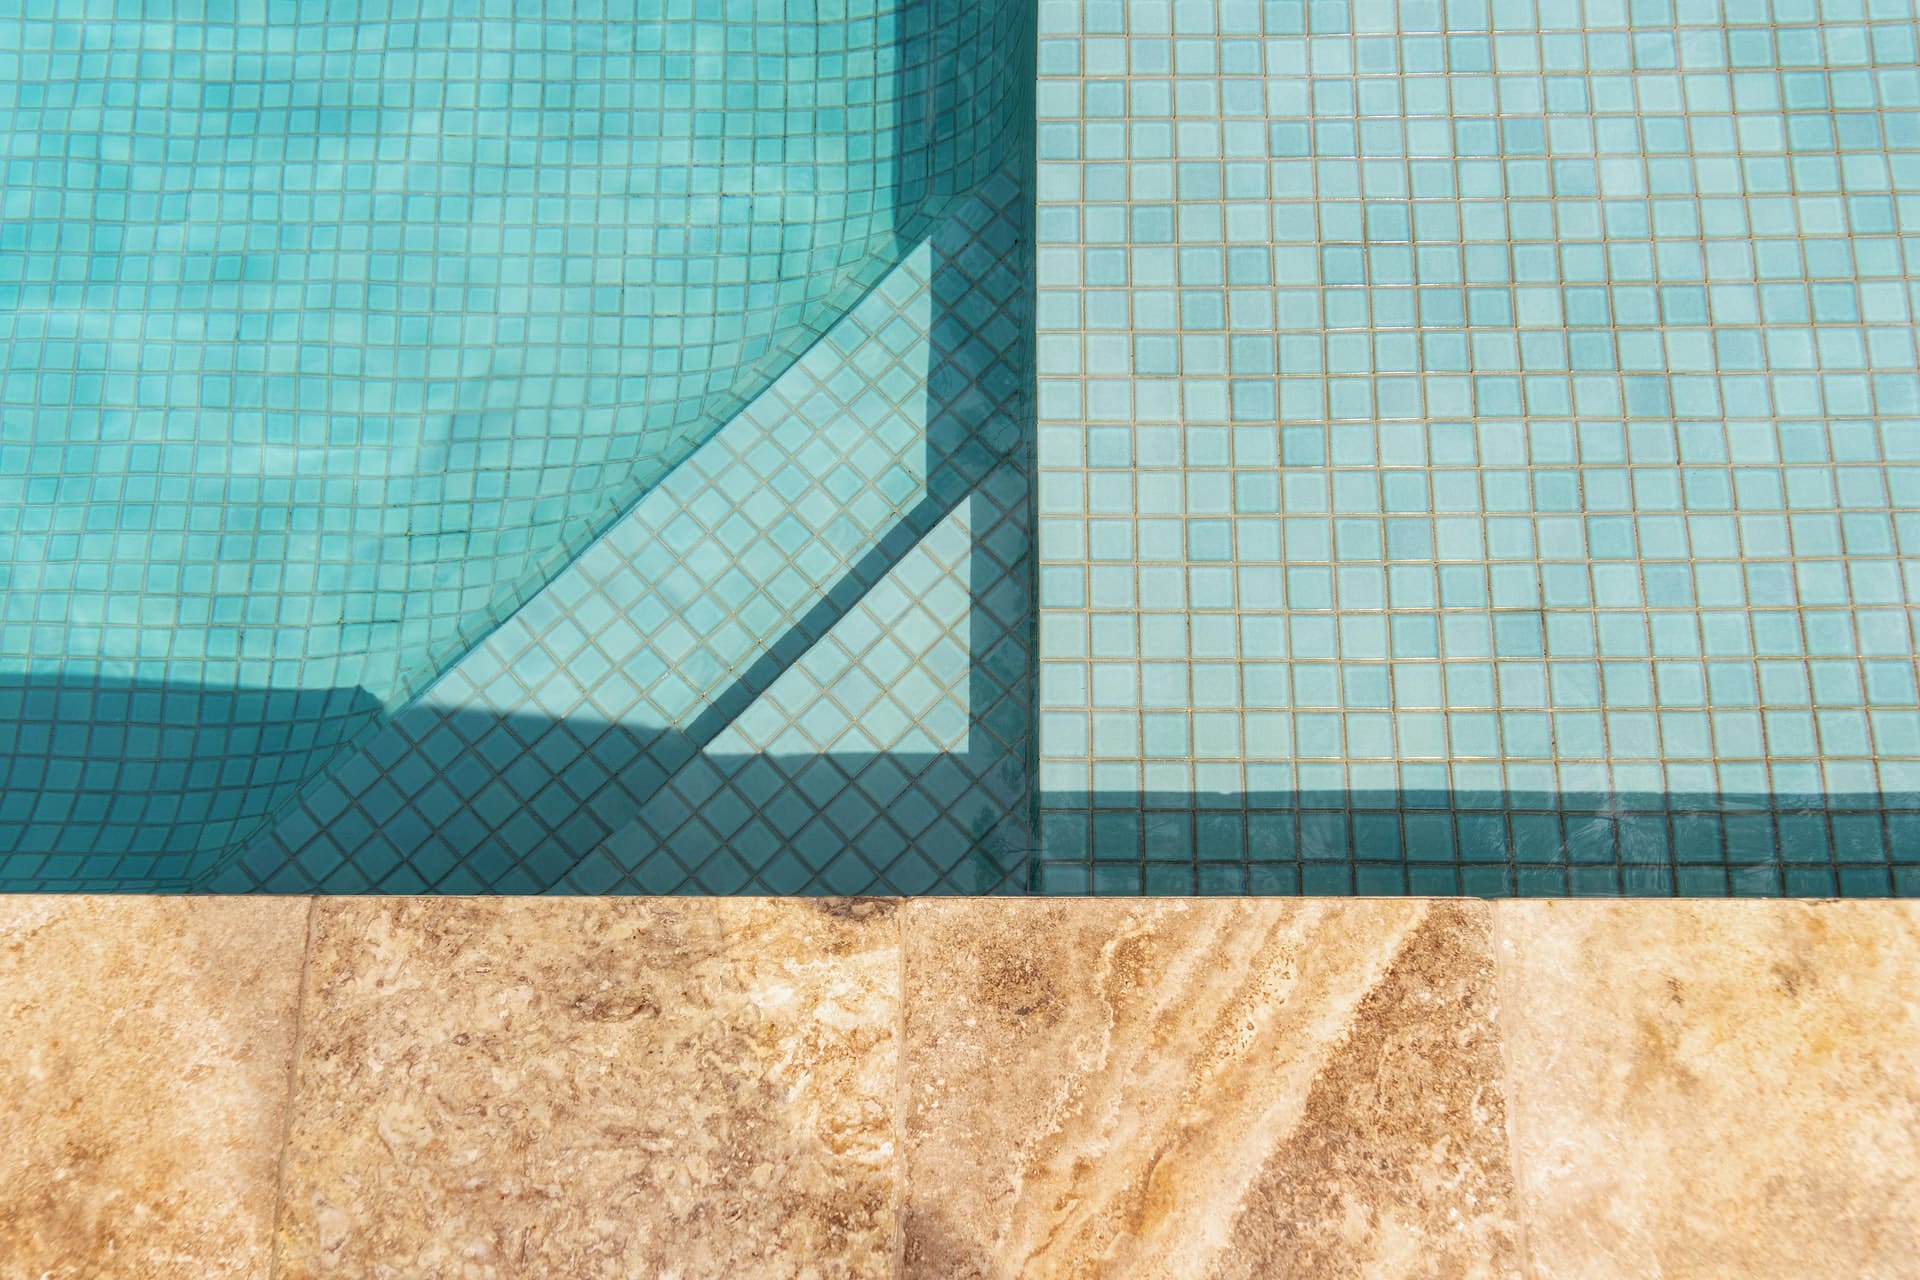 Comment choisir le bon revêtement pour sa piscine en fonction de votre climat ?